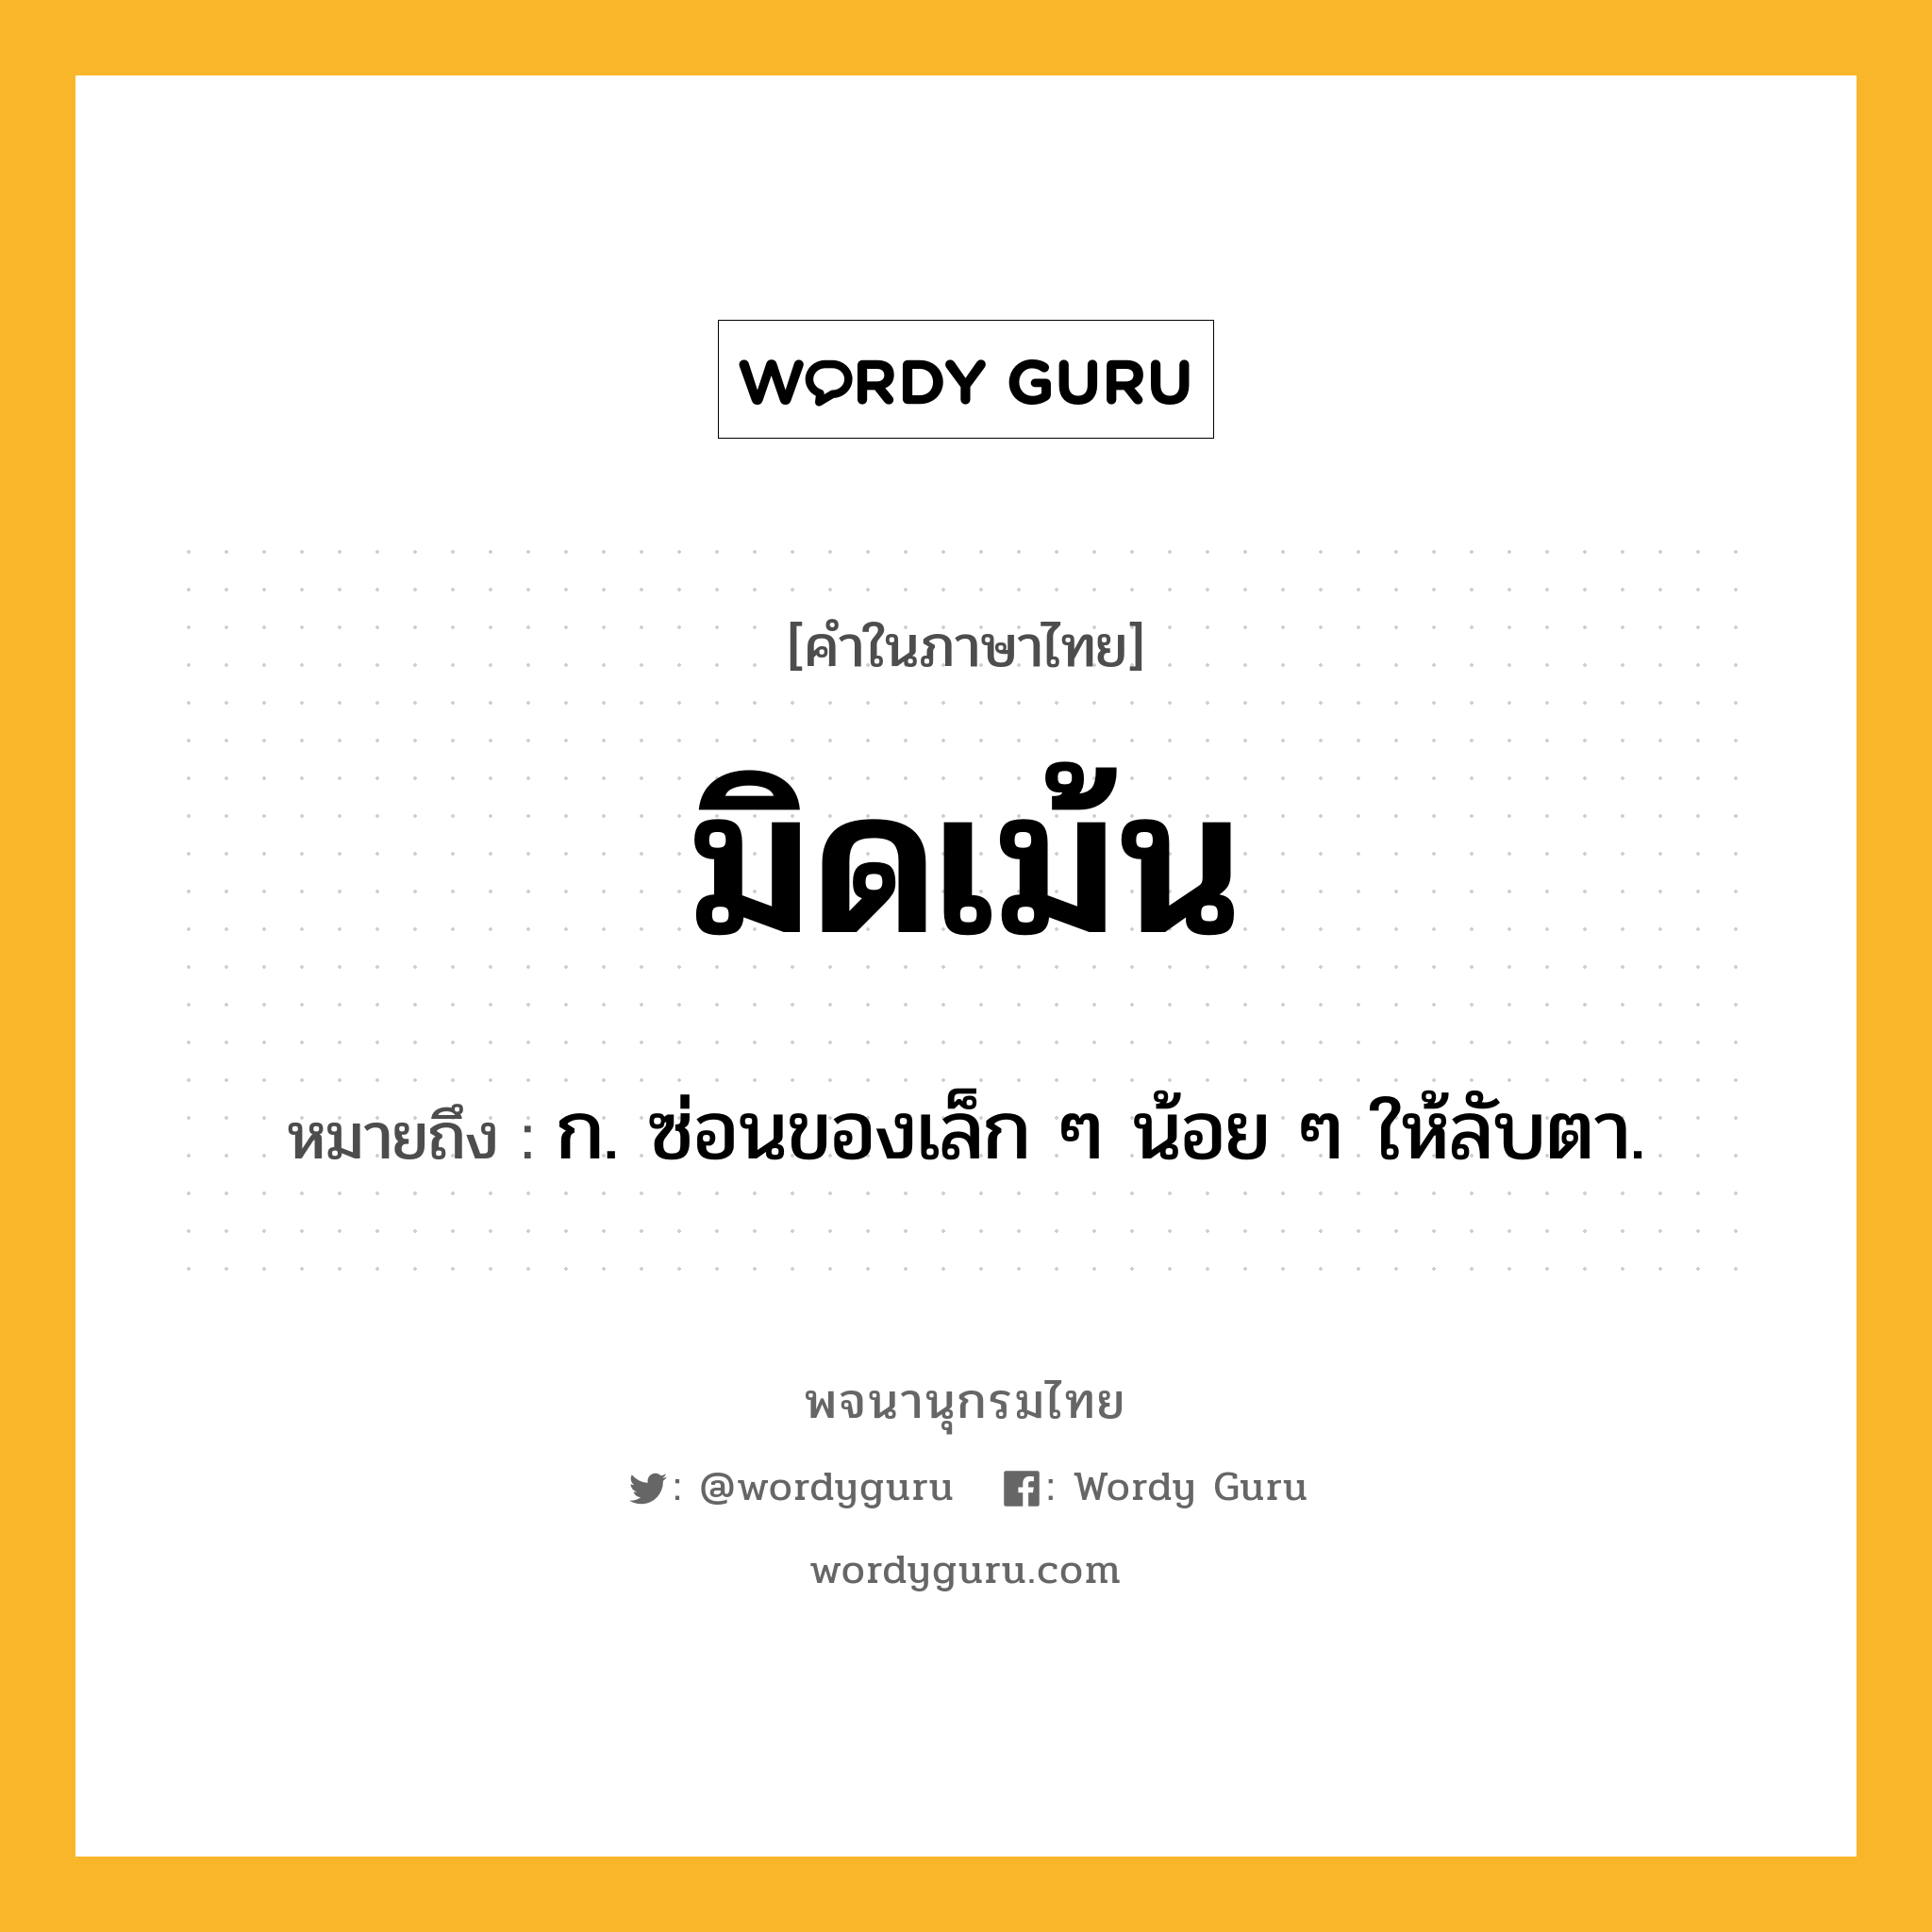 มิดเม้น ความหมาย หมายถึงอะไร?, คำในภาษาไทย มิดเม้น หมายถึง ก. ซ่อนของเล็ก ๆ น้อย ๆ ให้ลับตา.